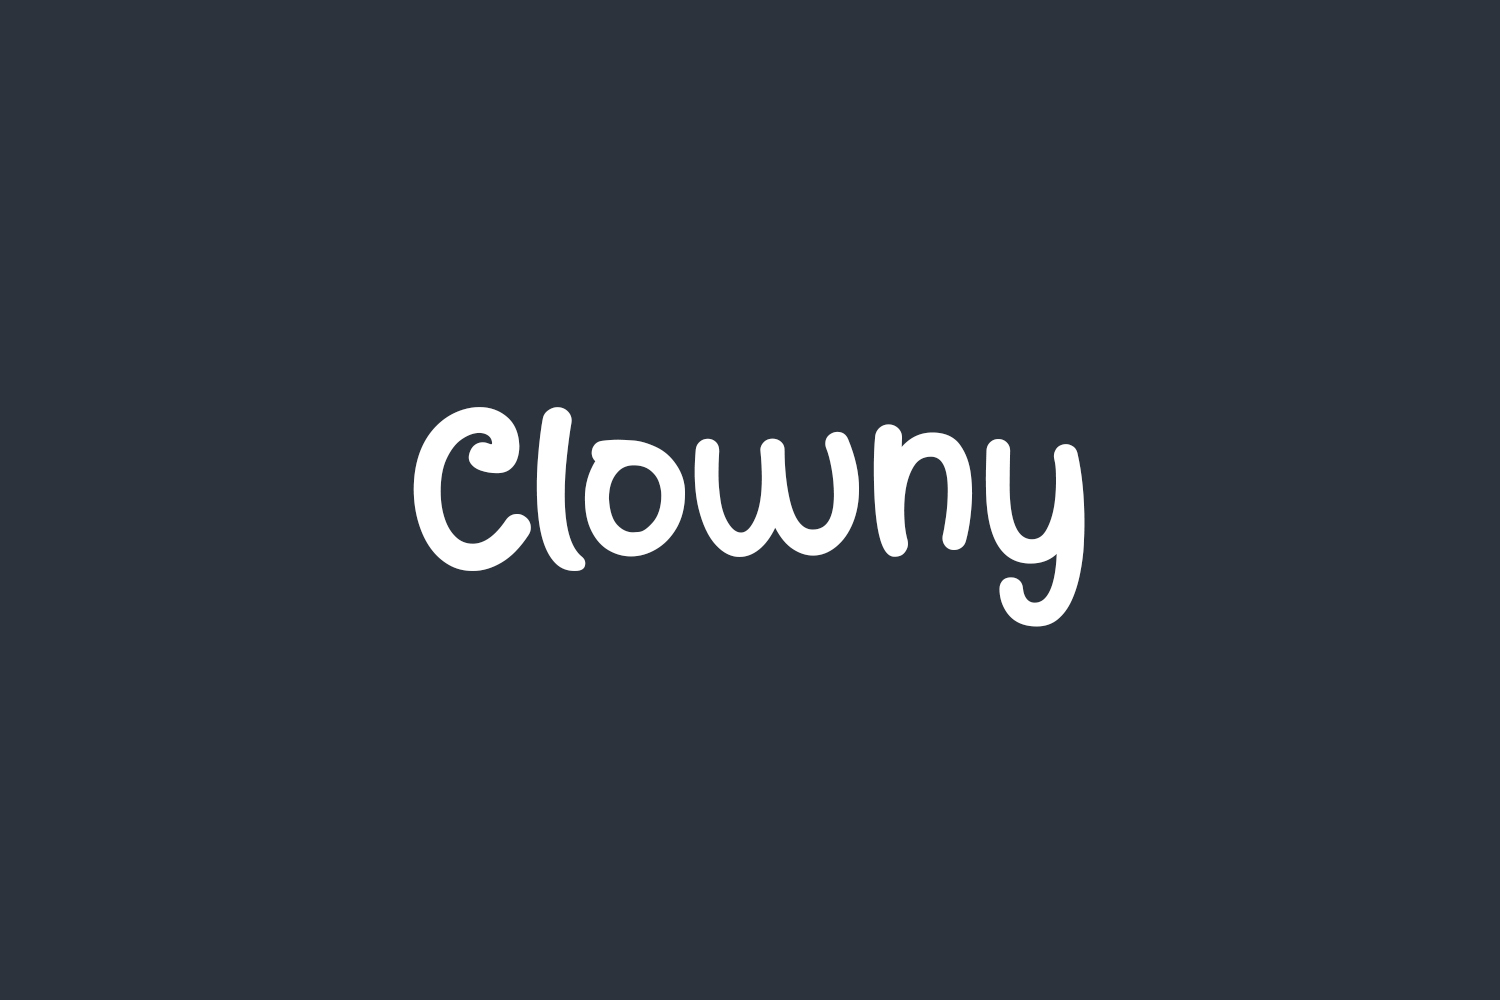 Clowny Free Font